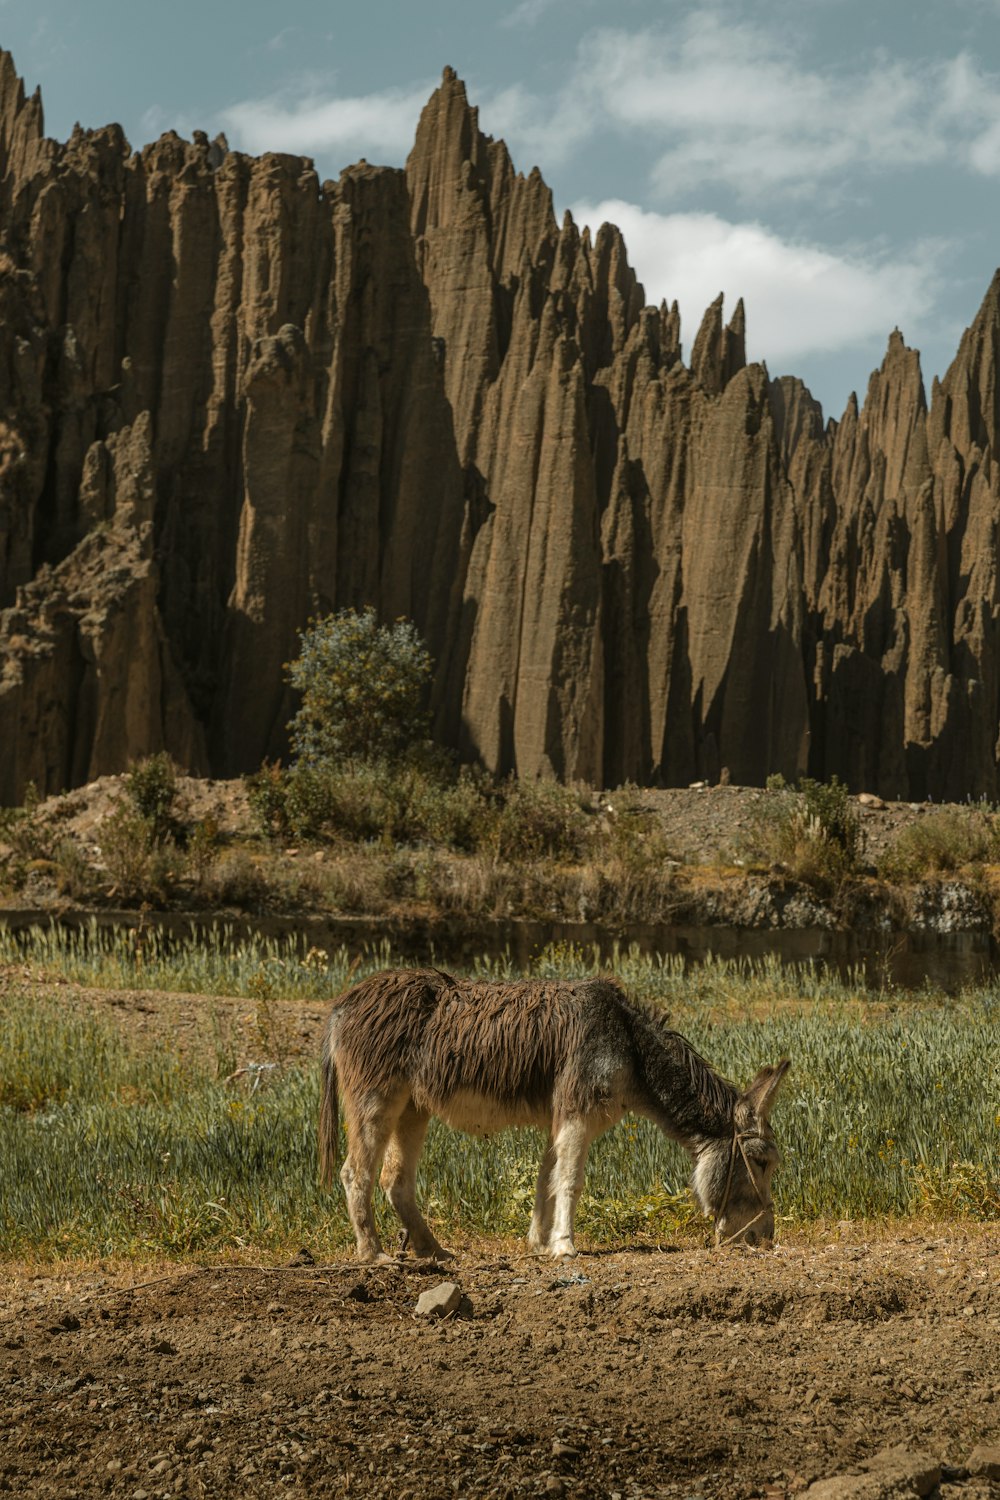 a donkey grazes in a field in front of a mountain range